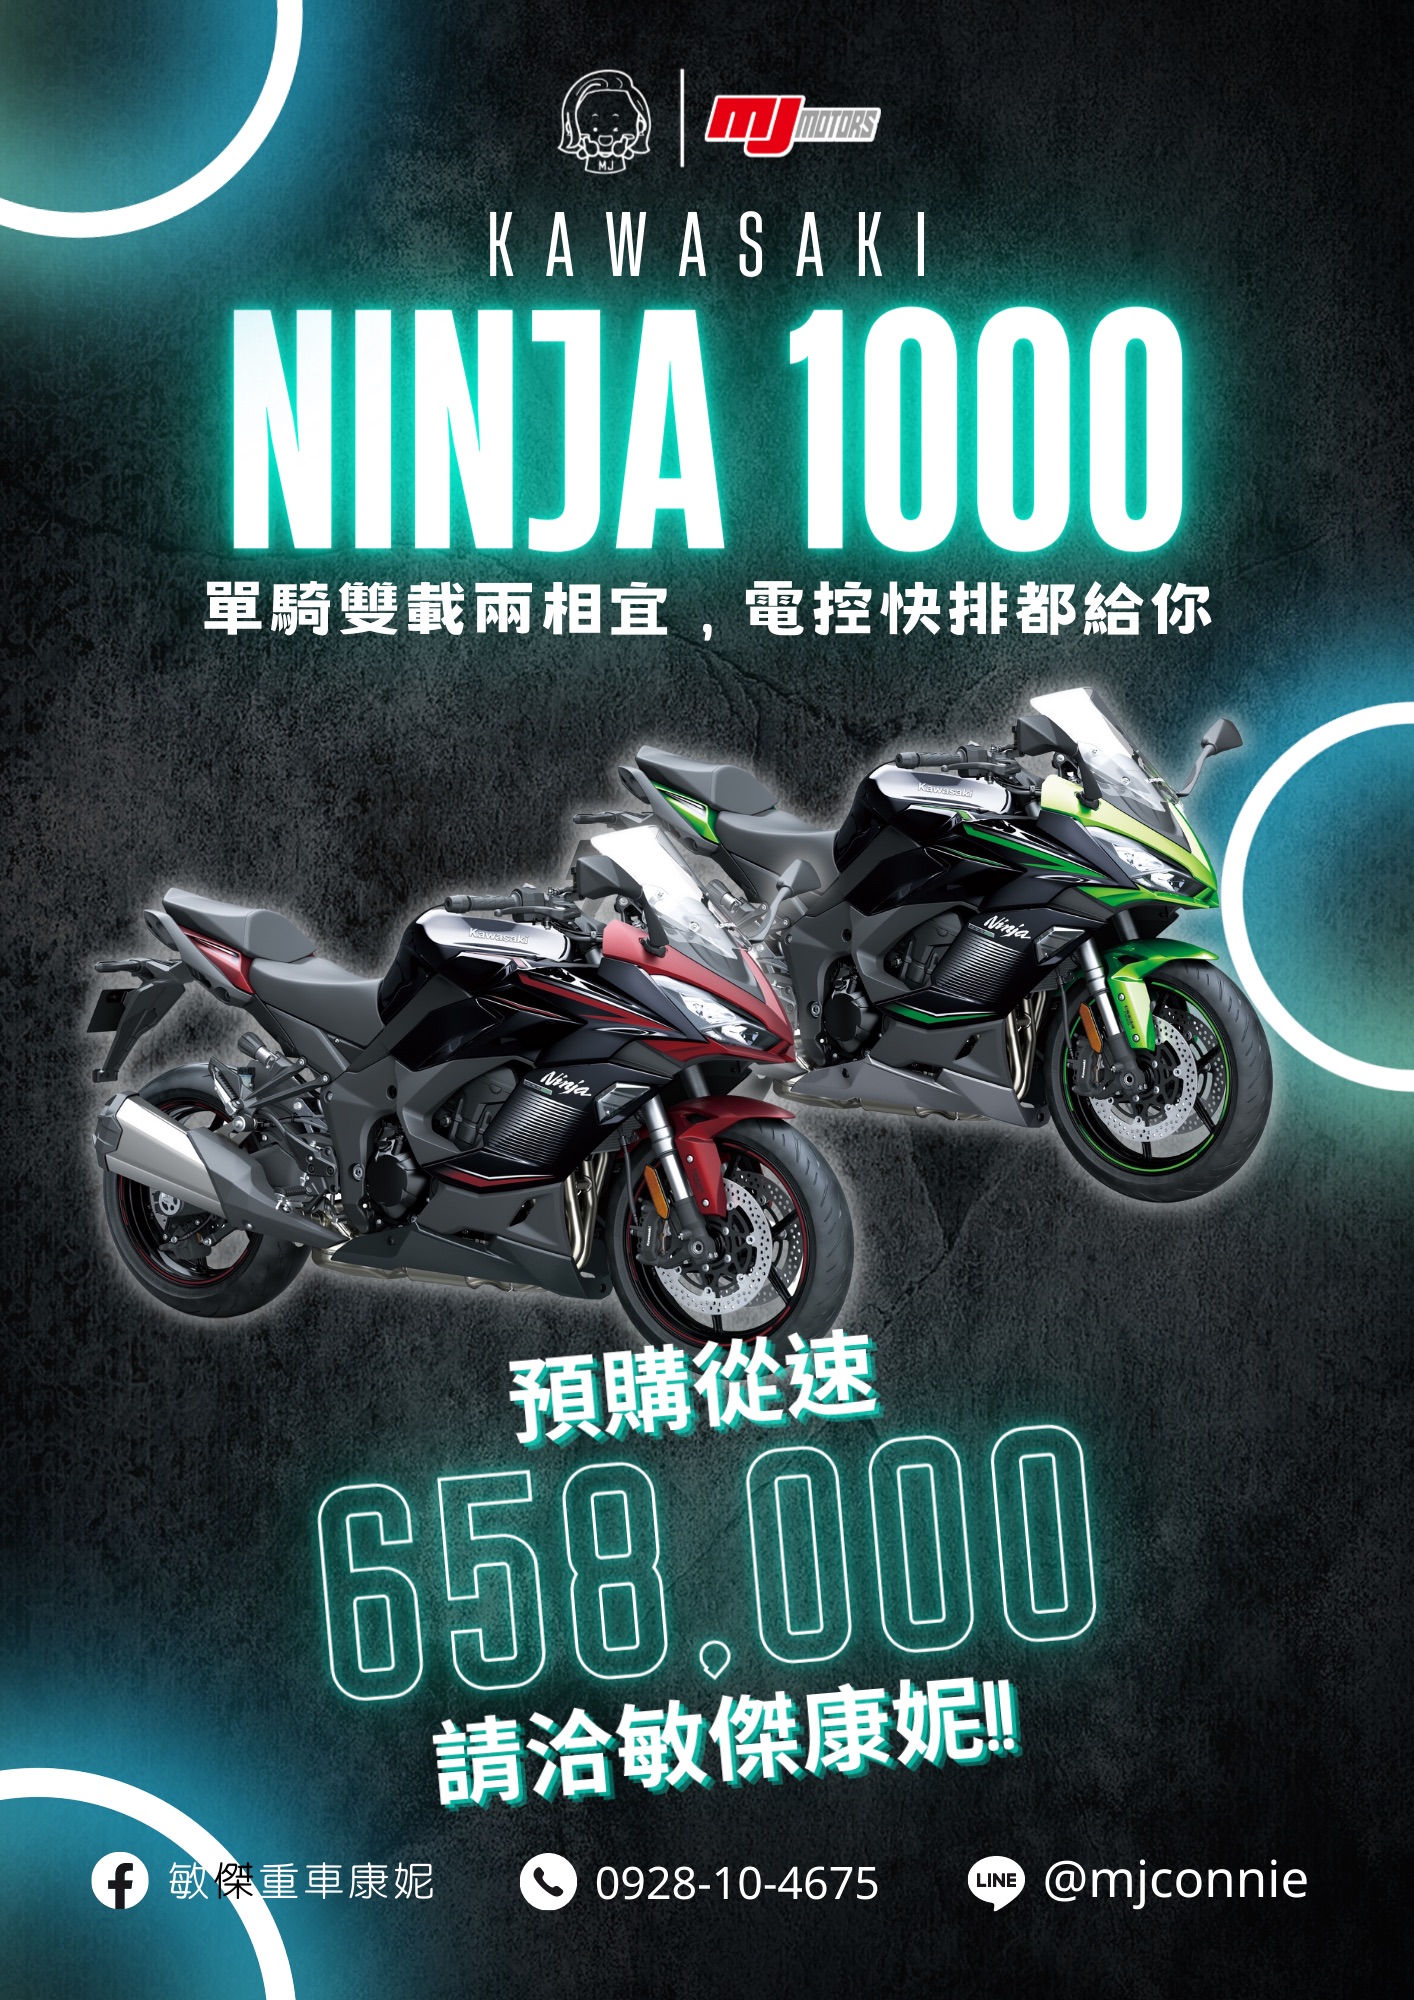 【敏傑車業資深銷售專員 康妮 Connie】KAWASAKI NINJA1000 - 「Webike-摩托車市」 『敏傑康妮』川崎 Kawasaki Ninja1000 Z100SX 開始接受預購排序!! 